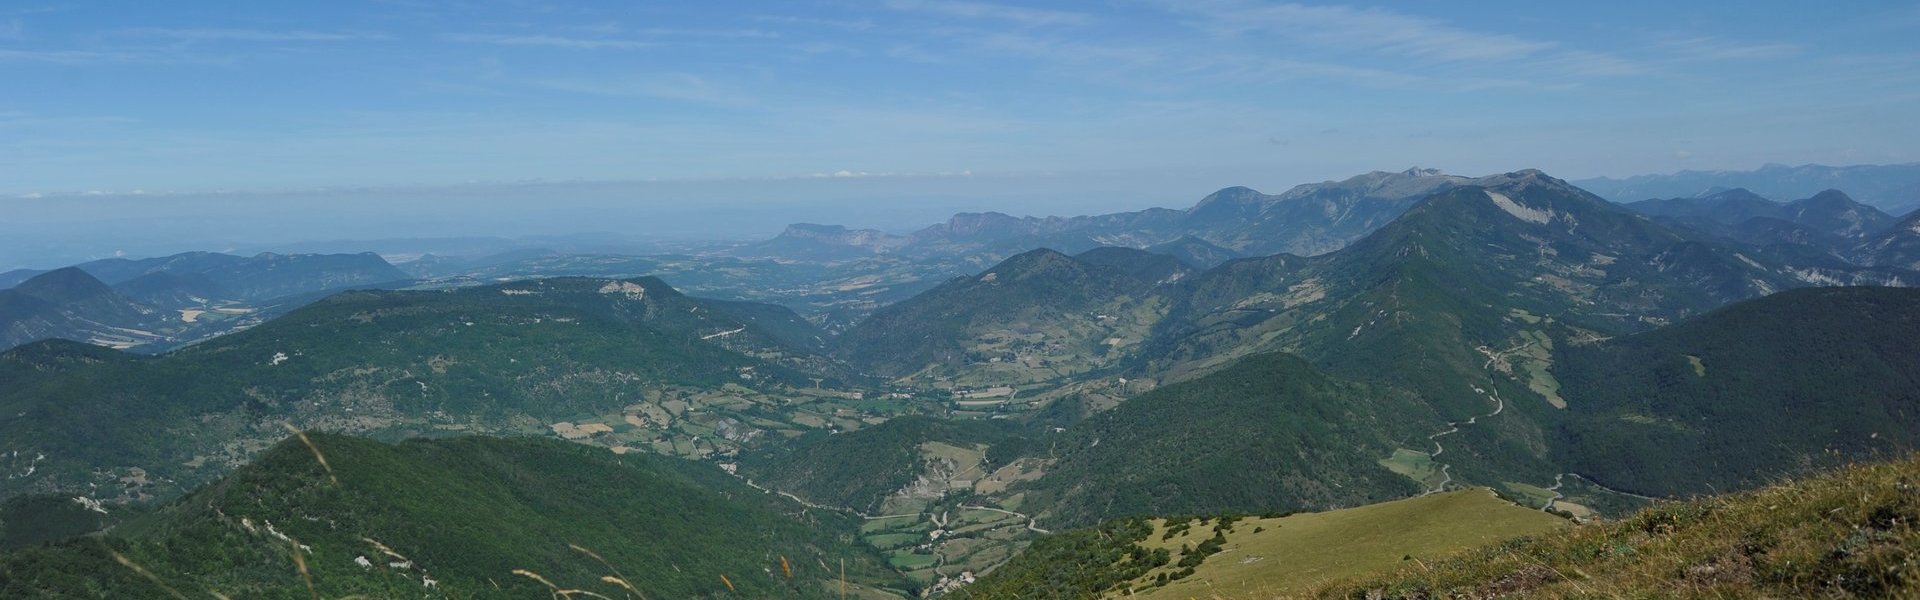 Sentiers de randonnées - Commune de Bouvières - Département de la Drôme